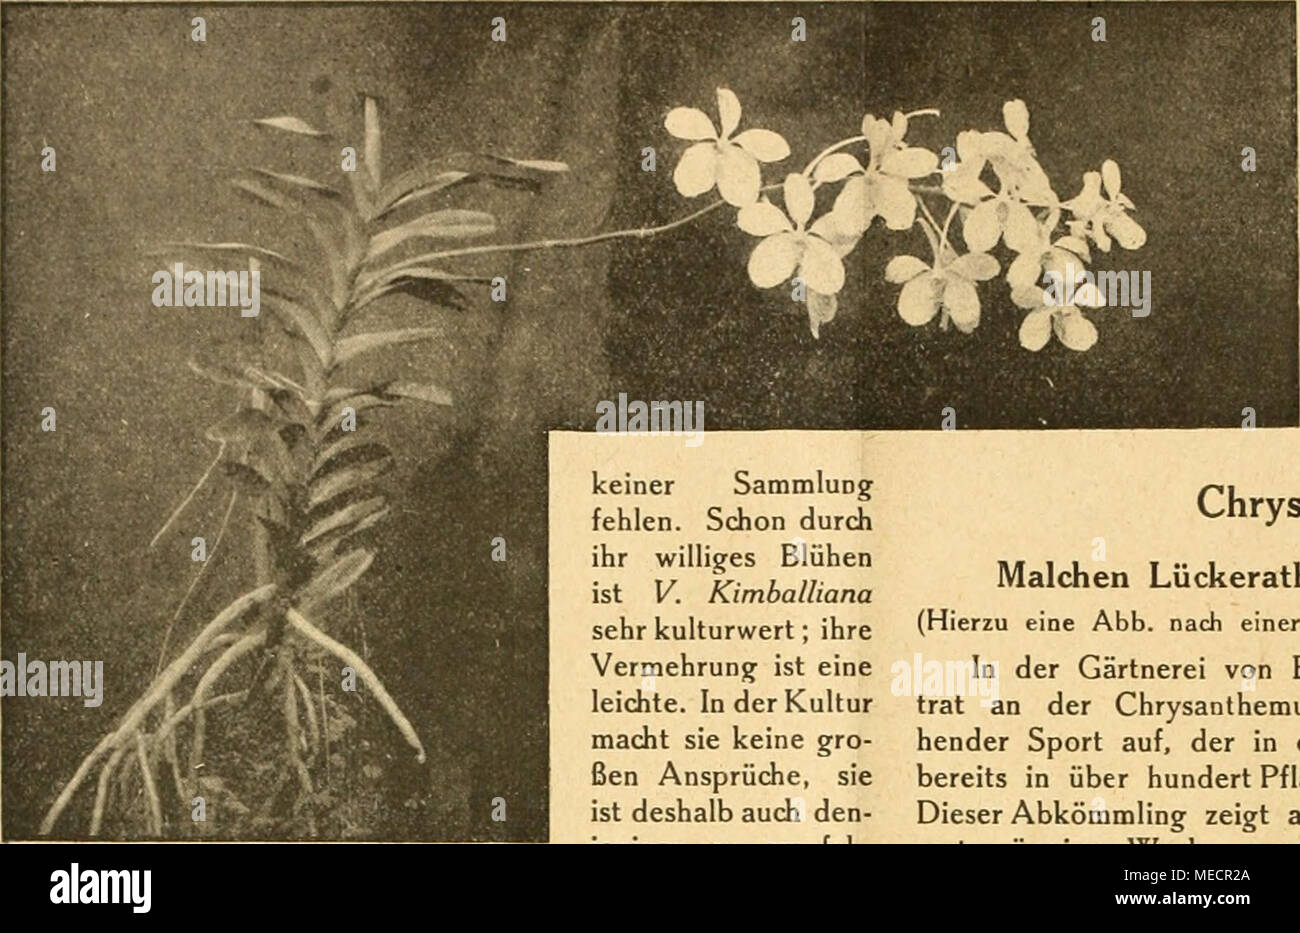 . Die Gartenwelt . Schöne Form der Vanda coerulea. keiner Sammlung fehlen. Schon durch ihr williges Blühen ist V. Kimballiana sehr kulturwert; ihre Vermehrung ist eine leichte. In der Kultur macht sie keine gro- ßen Ansprüche, sie ist deshalb auch den- jenigen zu empfeh- len, die in der Or- chideenkultur noch keine weitgehende Erfahrung besitzen. — Zum erstenmal blühte hier eine Laelio-Cattleya Calistoglossa, die Abb. Seite 5 zeigt. Es ist dies ein Prunkstück unserer Sammlung, das allgemein bewundert wird. Die Farbe der Blumen ist lilarosa mit dunkel- purpurner Lippe und zwei gelben Schlundfle Stock Photo